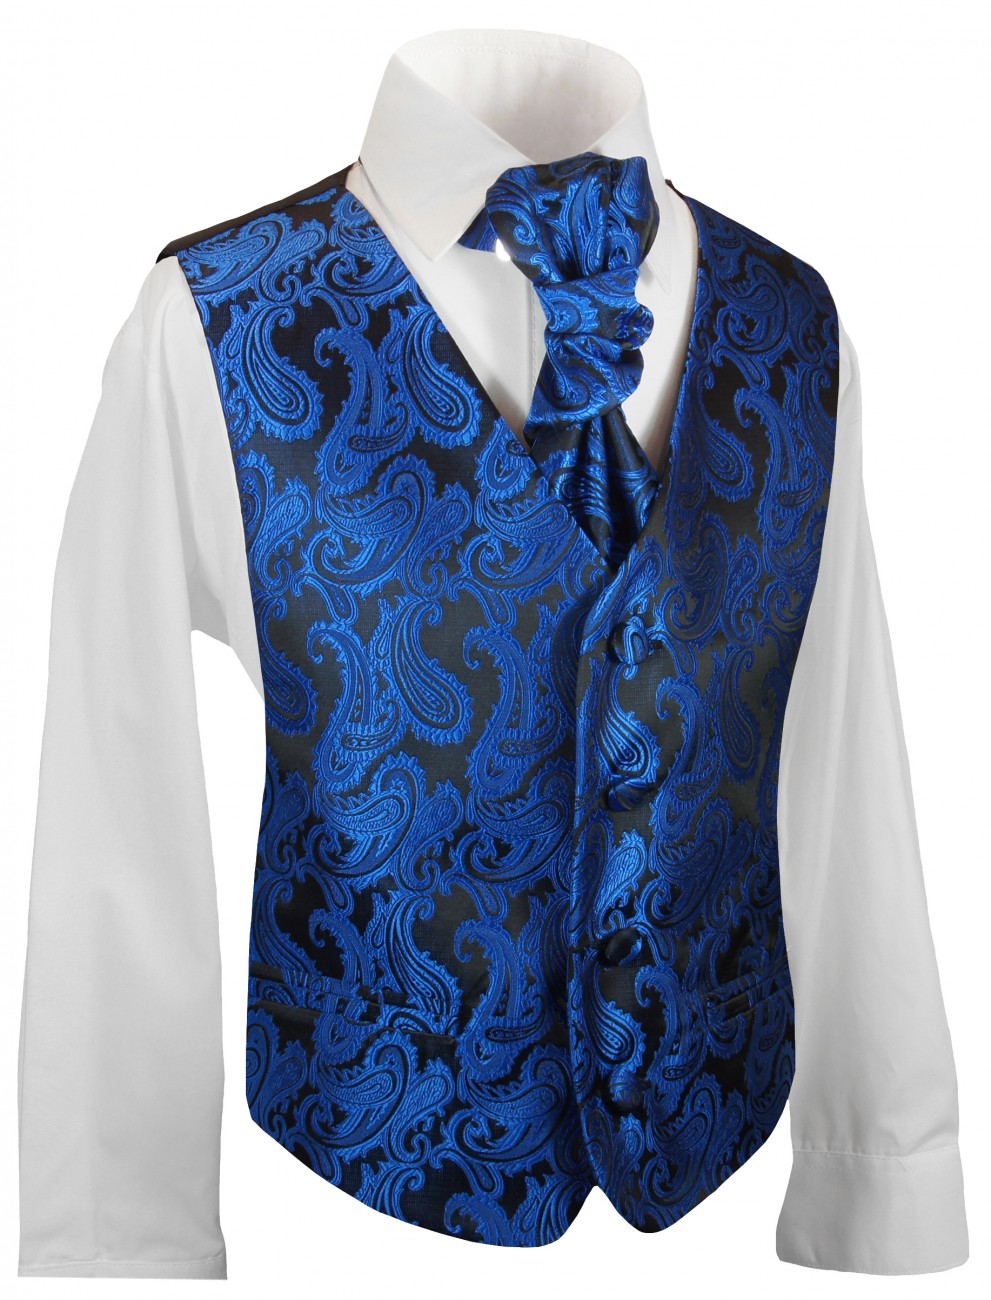 Festliches Jungen Westen Set 4tlg blau paisley mit Plastron, Hemd und Hose